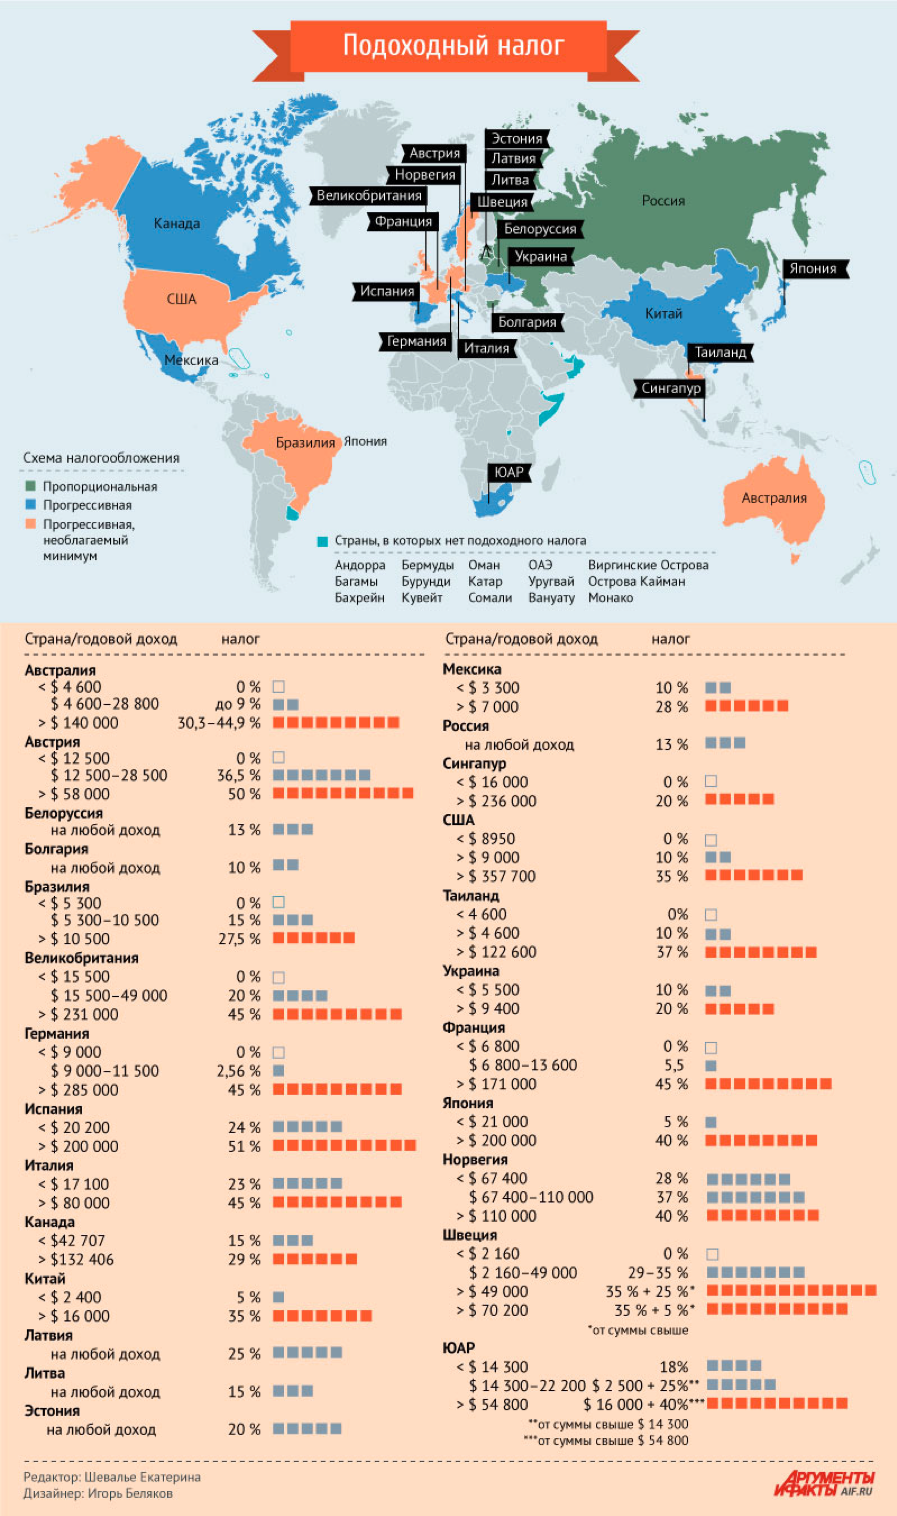 Подоходный налог в разных странах мира в 2017 году